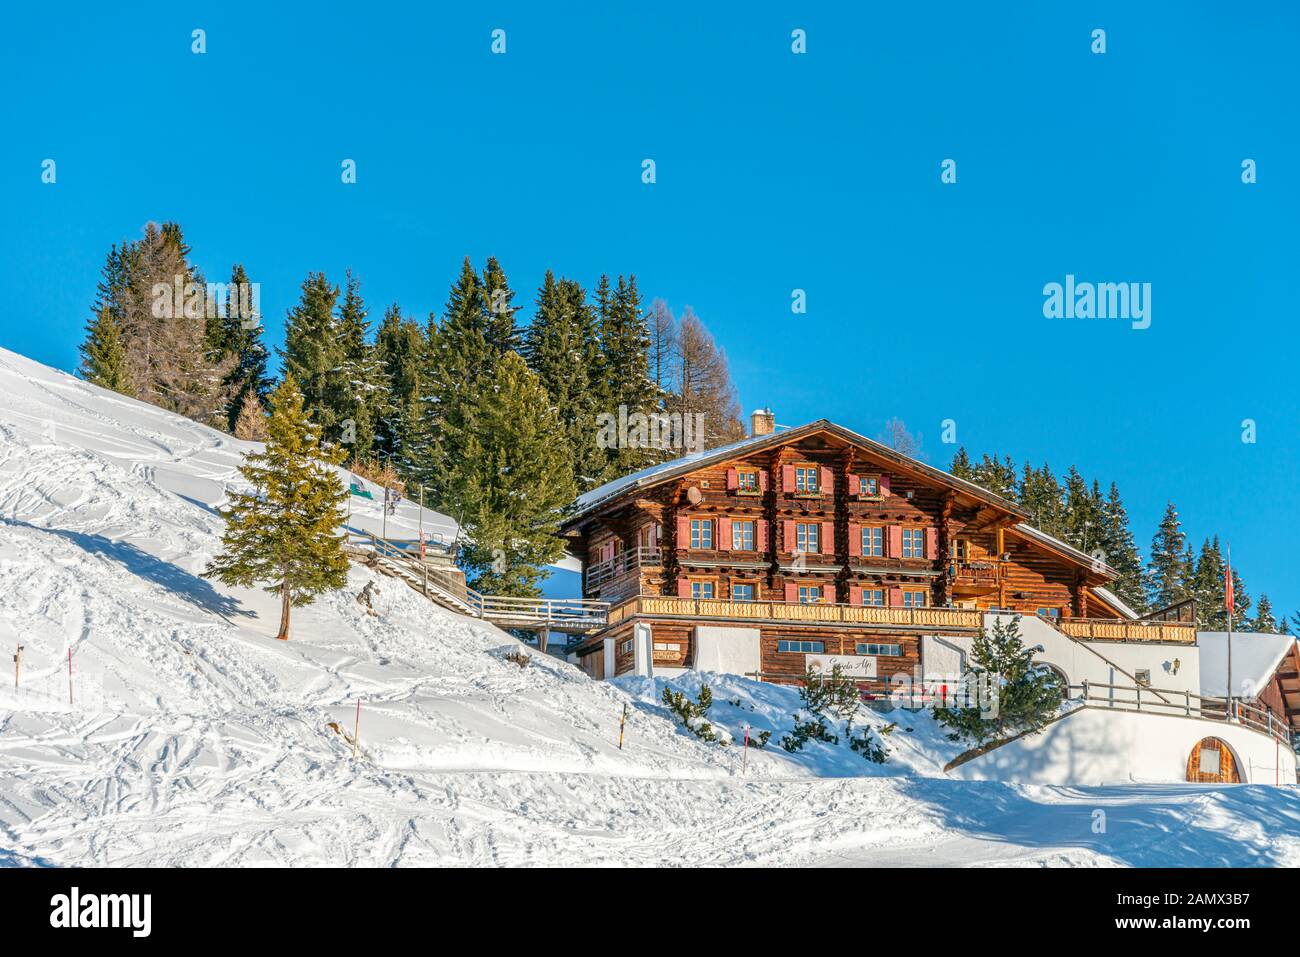 Bergrestaurant Strela-Alp, Davos in winter, Graubünden, Switzerland Stock Photo